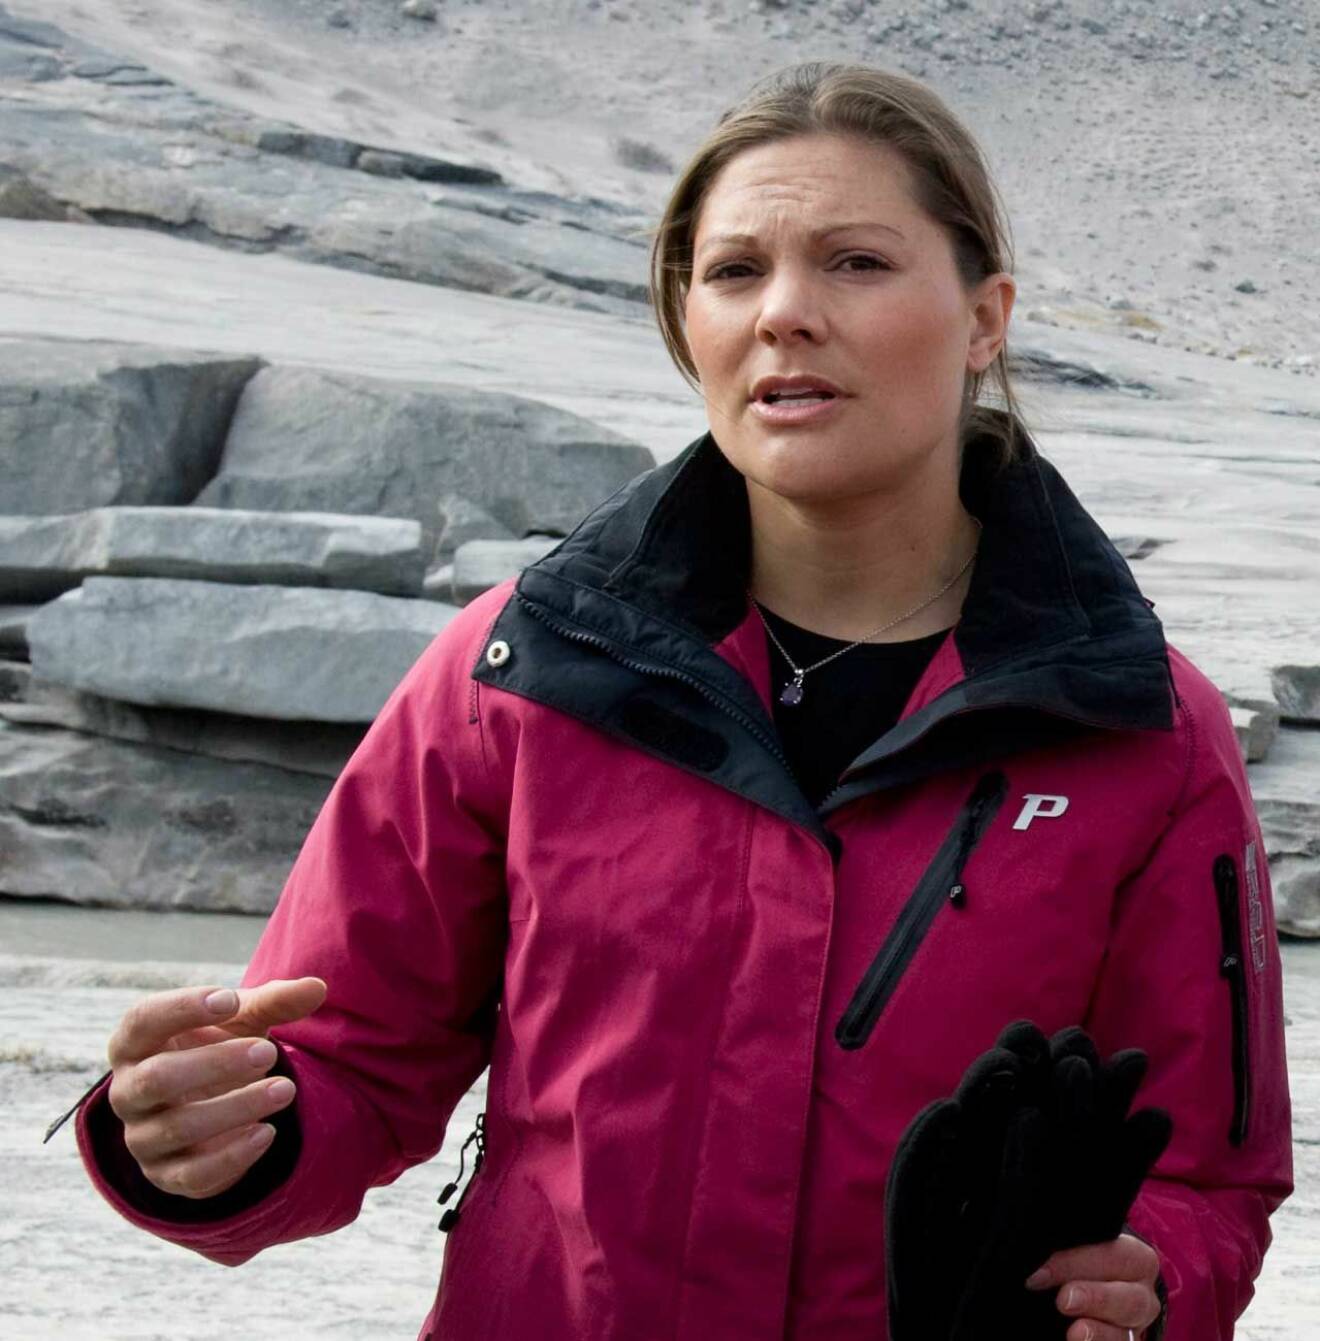 Kronprinsessan Victoria Kangerlussuaq på Grönland, samtidigt som prins Daniel fick en ny njure.